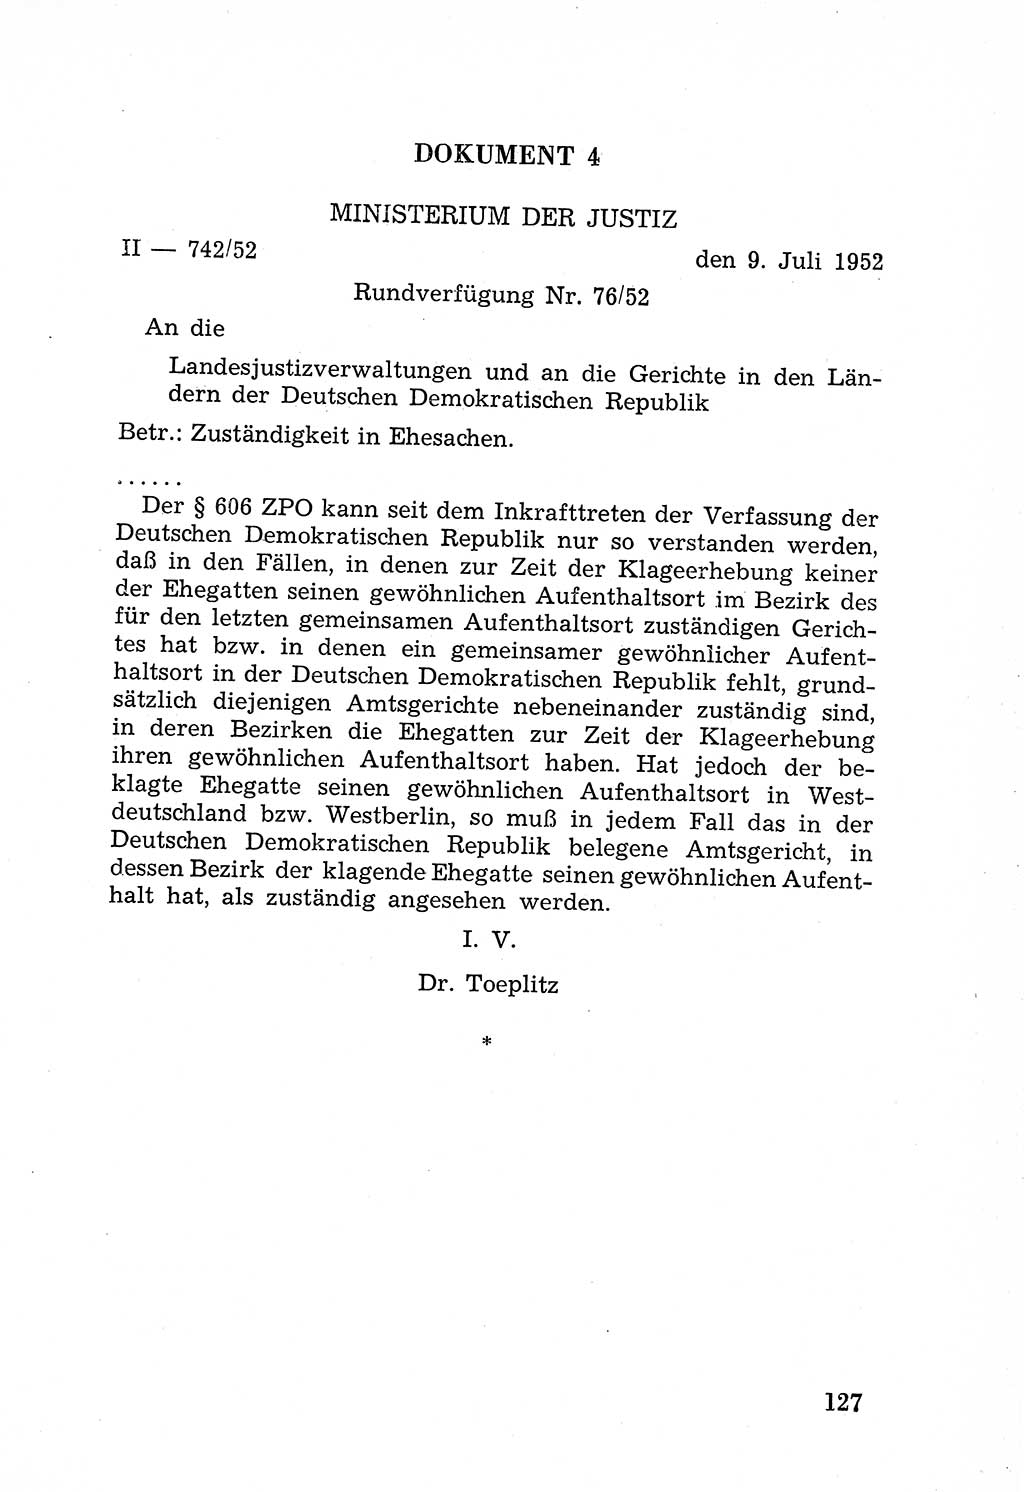 Rechtsstaat in zweierlei Hinsicht, Untersuchungsausschuß freiheitlicher Juristen (UfJ) [Bundesrepublik Deutschland (BRD)] 1956, Seite 127 (R.-St. UfJ BRD 1956, S. 127)